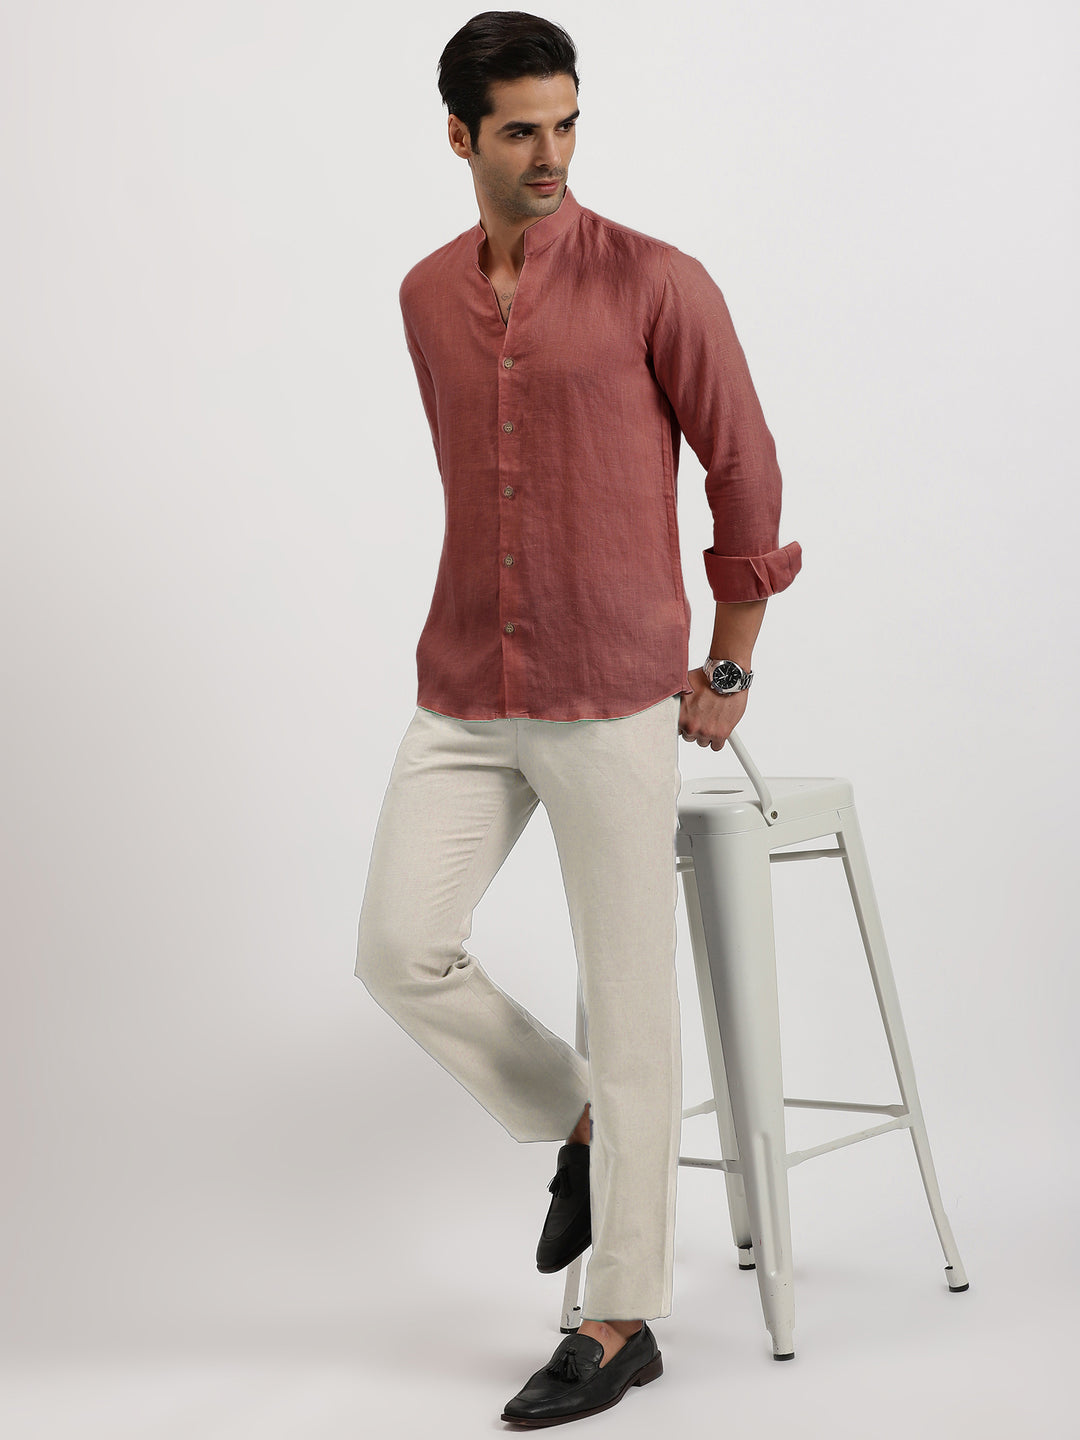 Craig - Pure Linen V Neck Full Sleeve Shirt - Terracotta Red